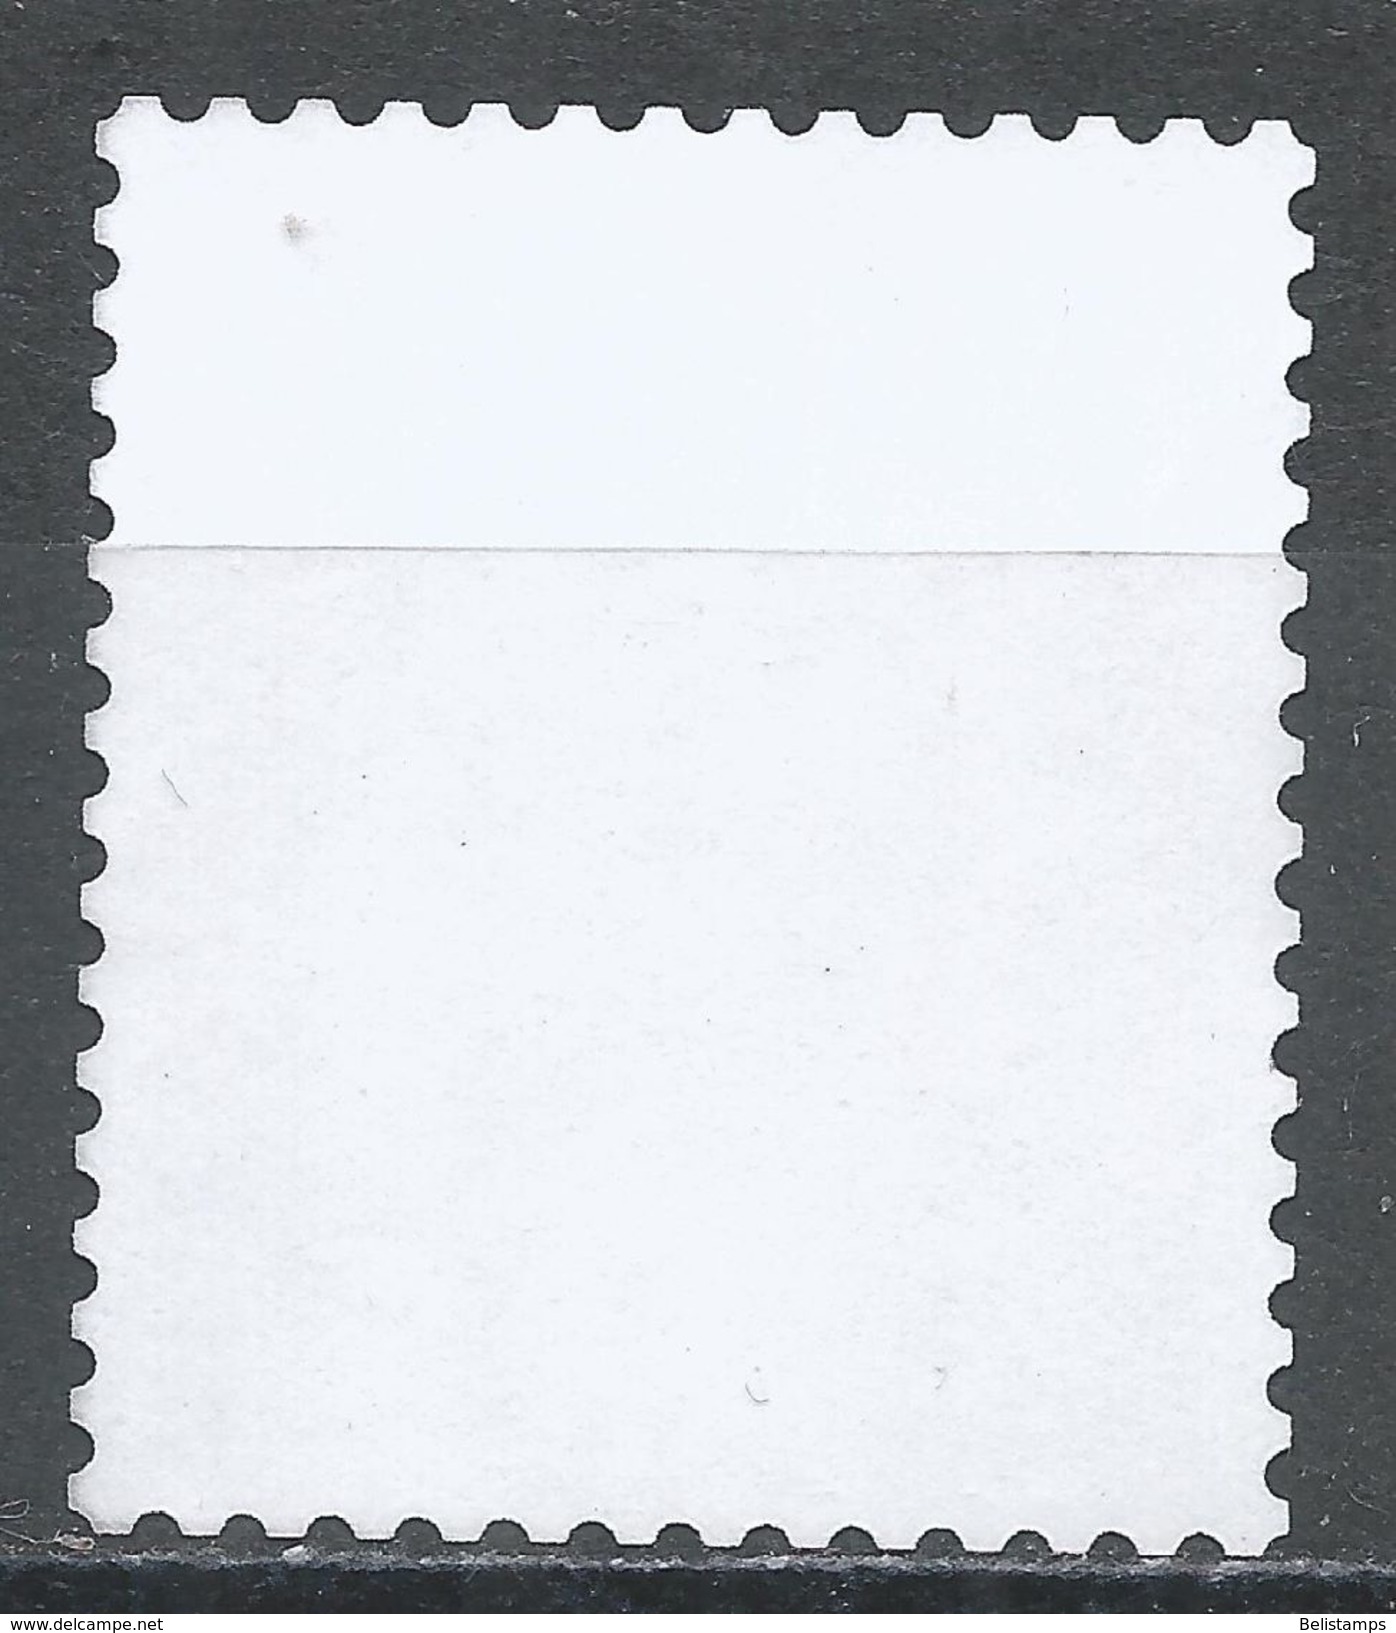 Japan 2013. Scott #3595d (MNG) Gentoo Penguins, Pingouins - Unused Stamps